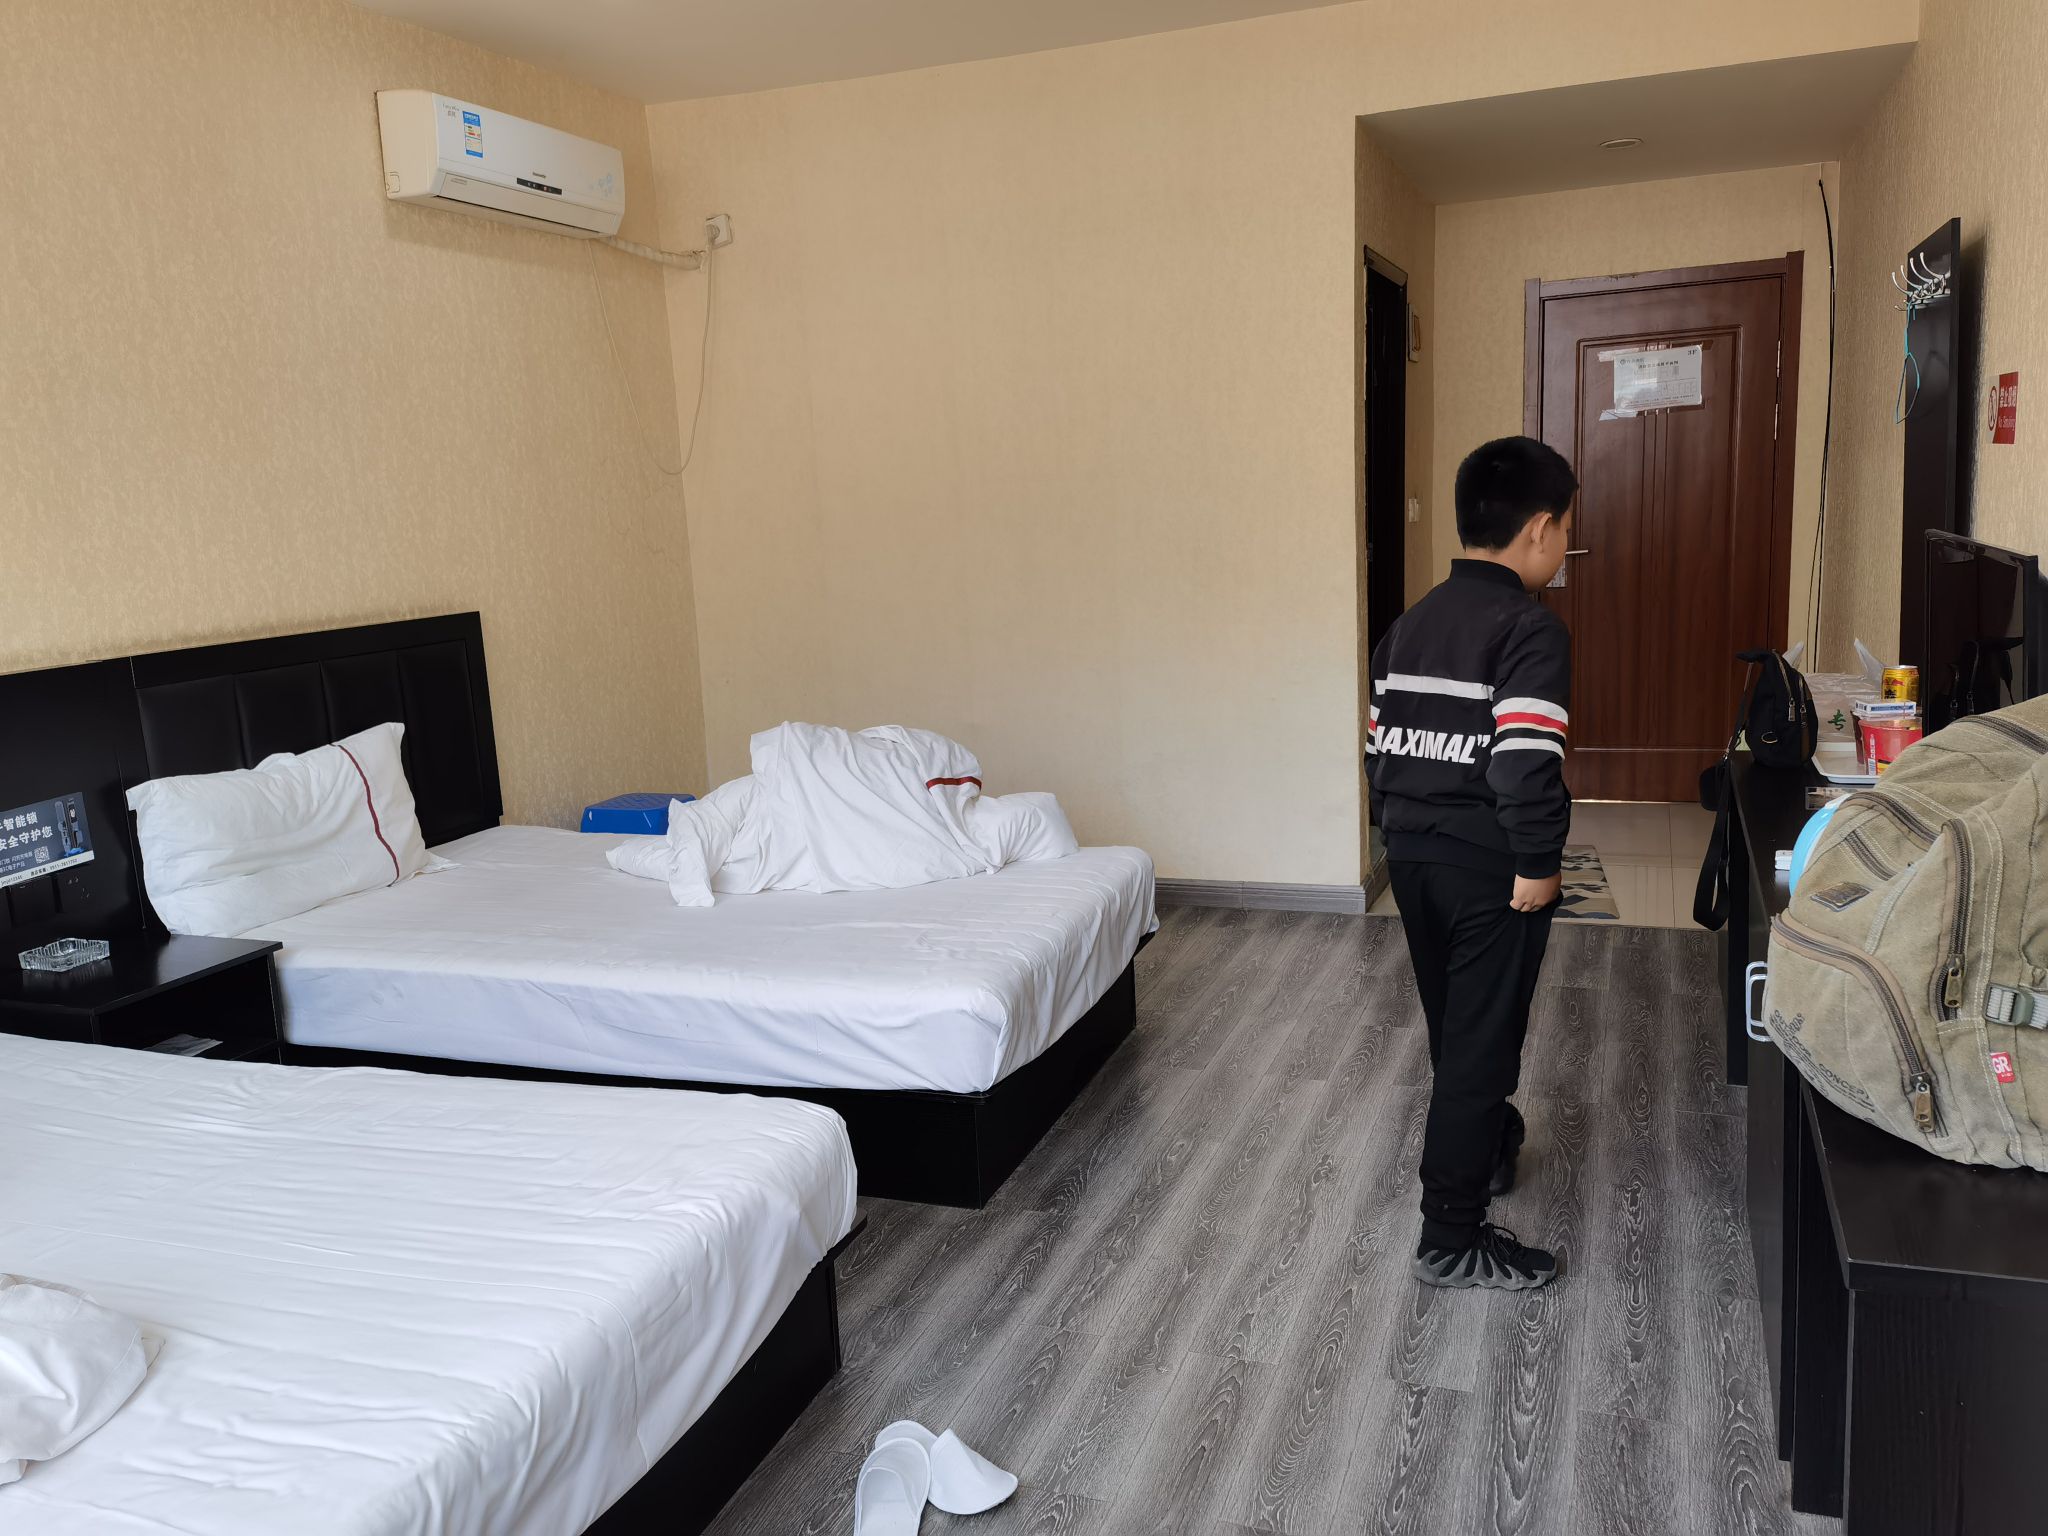 吴起县城里挺好的宾馆，老板热情服务，房间干净整洁，住的很满意。提前在携程订房也挺实惠的，距离夜市，超